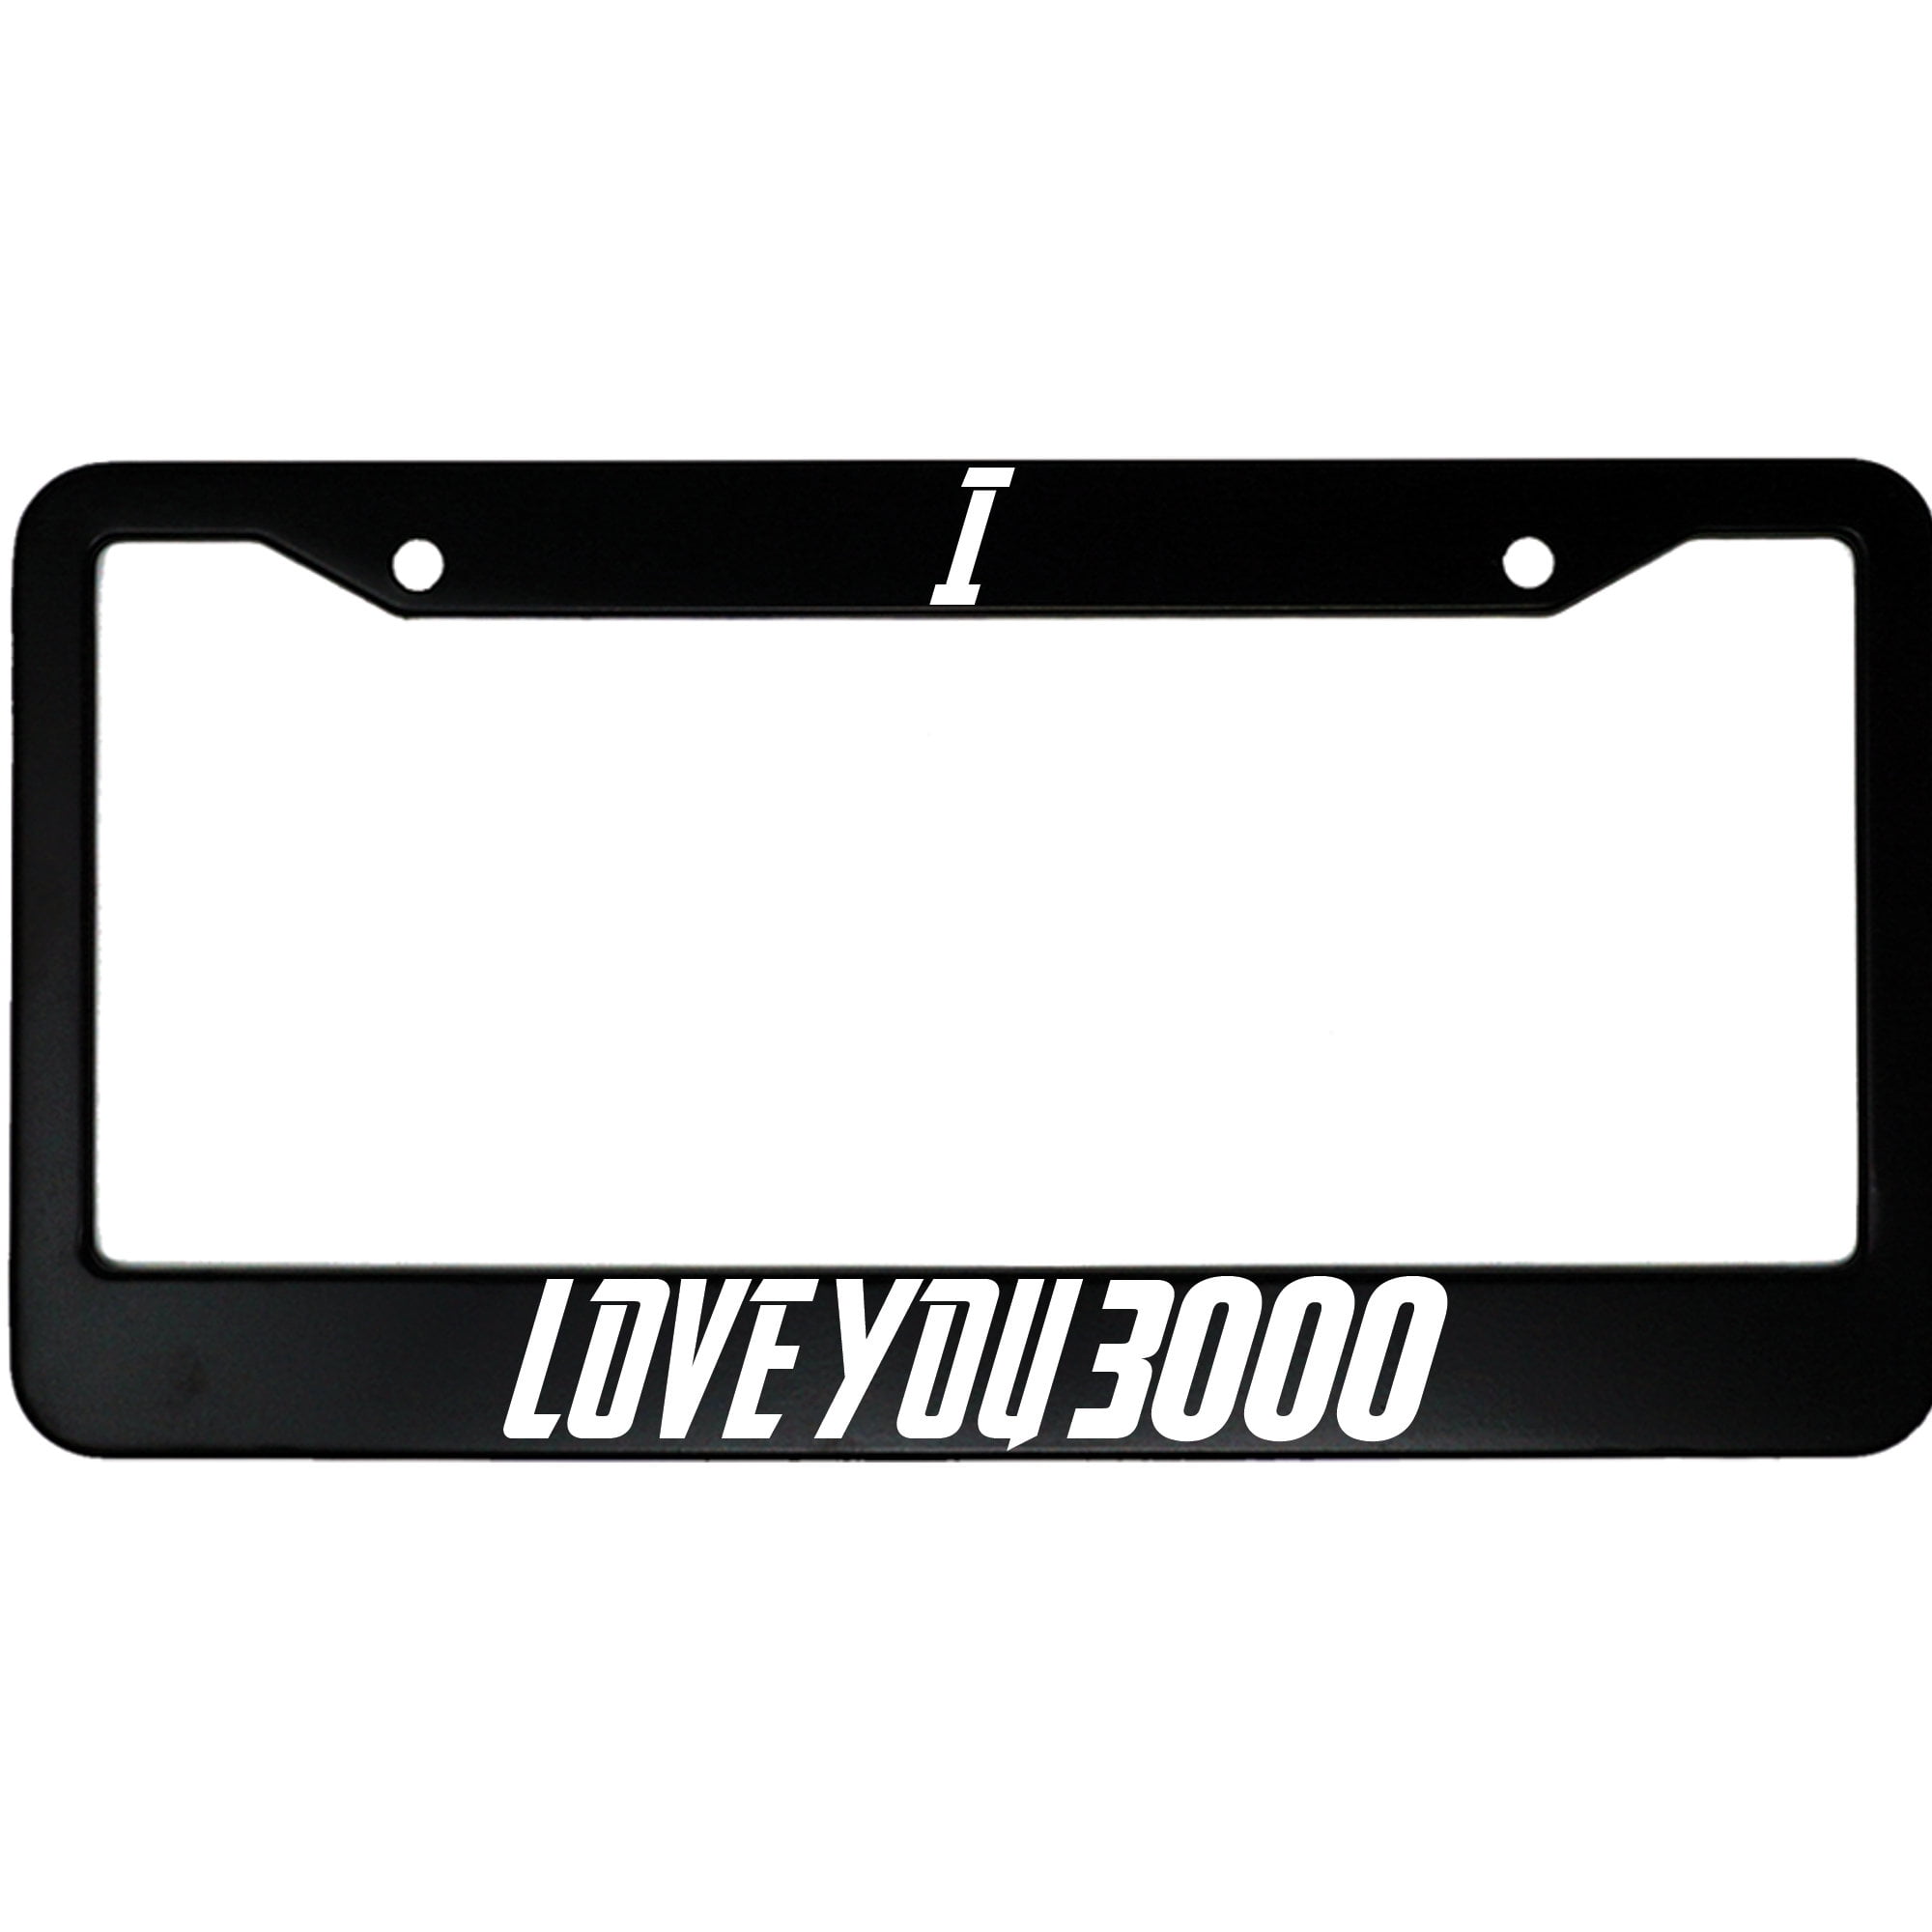 I Love You 3000 Aluminum Car License Plate Frame Walmart Com Walmart Com